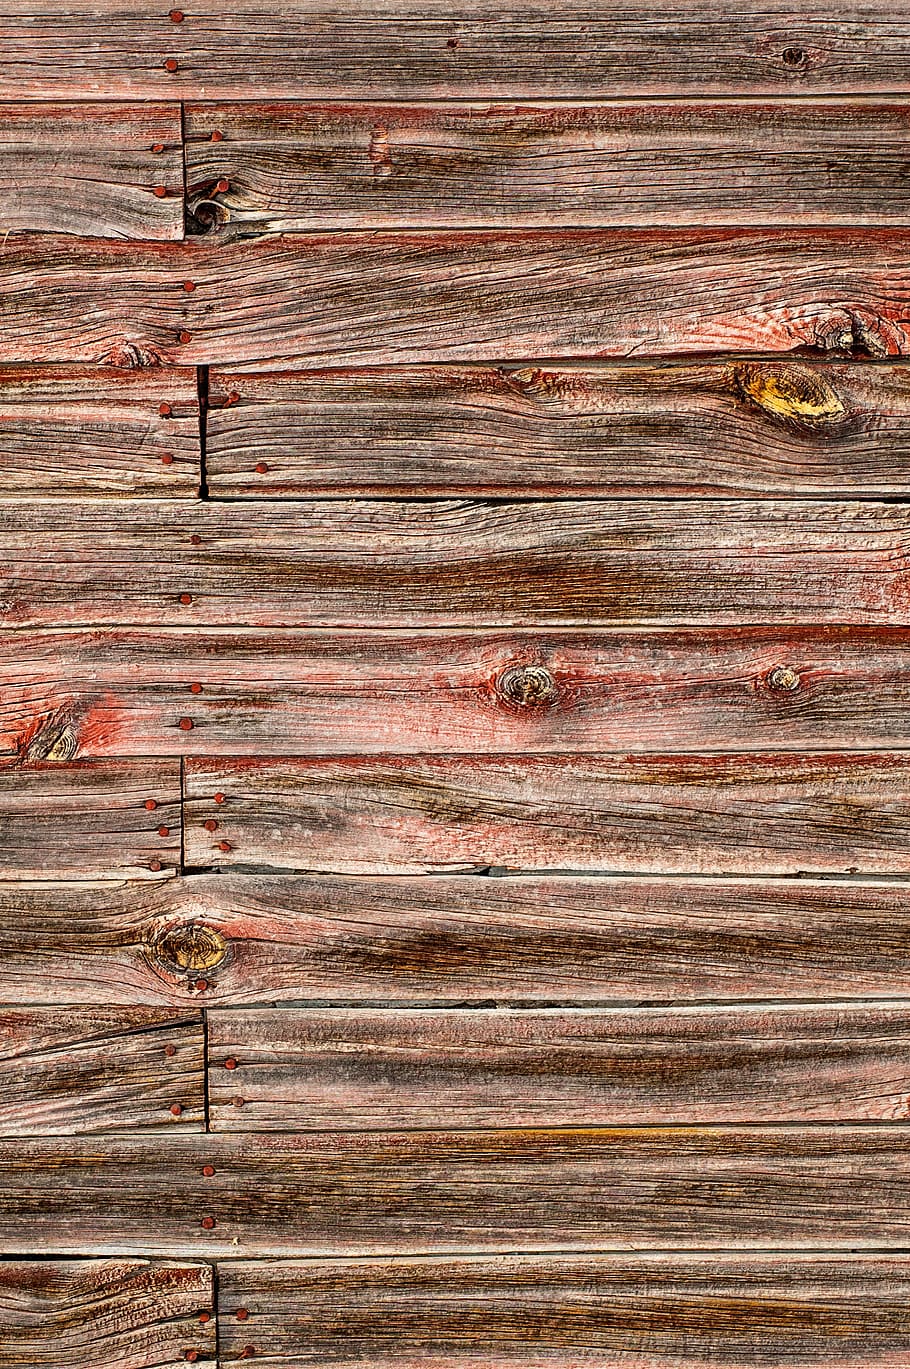 Nền hình nền mặt đồng trang trí với vân gỗ đẹp mắt sẽ làm cho không gian của bạn trở nên rực rỡ và đẹp một cách hoàn hảo. Sử dụng HD wallpaper: barn wood texture, bạn sẽ tìm thấy một nét đẹp hoang sơ vô cùng ấn tượng và tạo nên tiếng động mạnh mẽ trong trang trí nội thất.